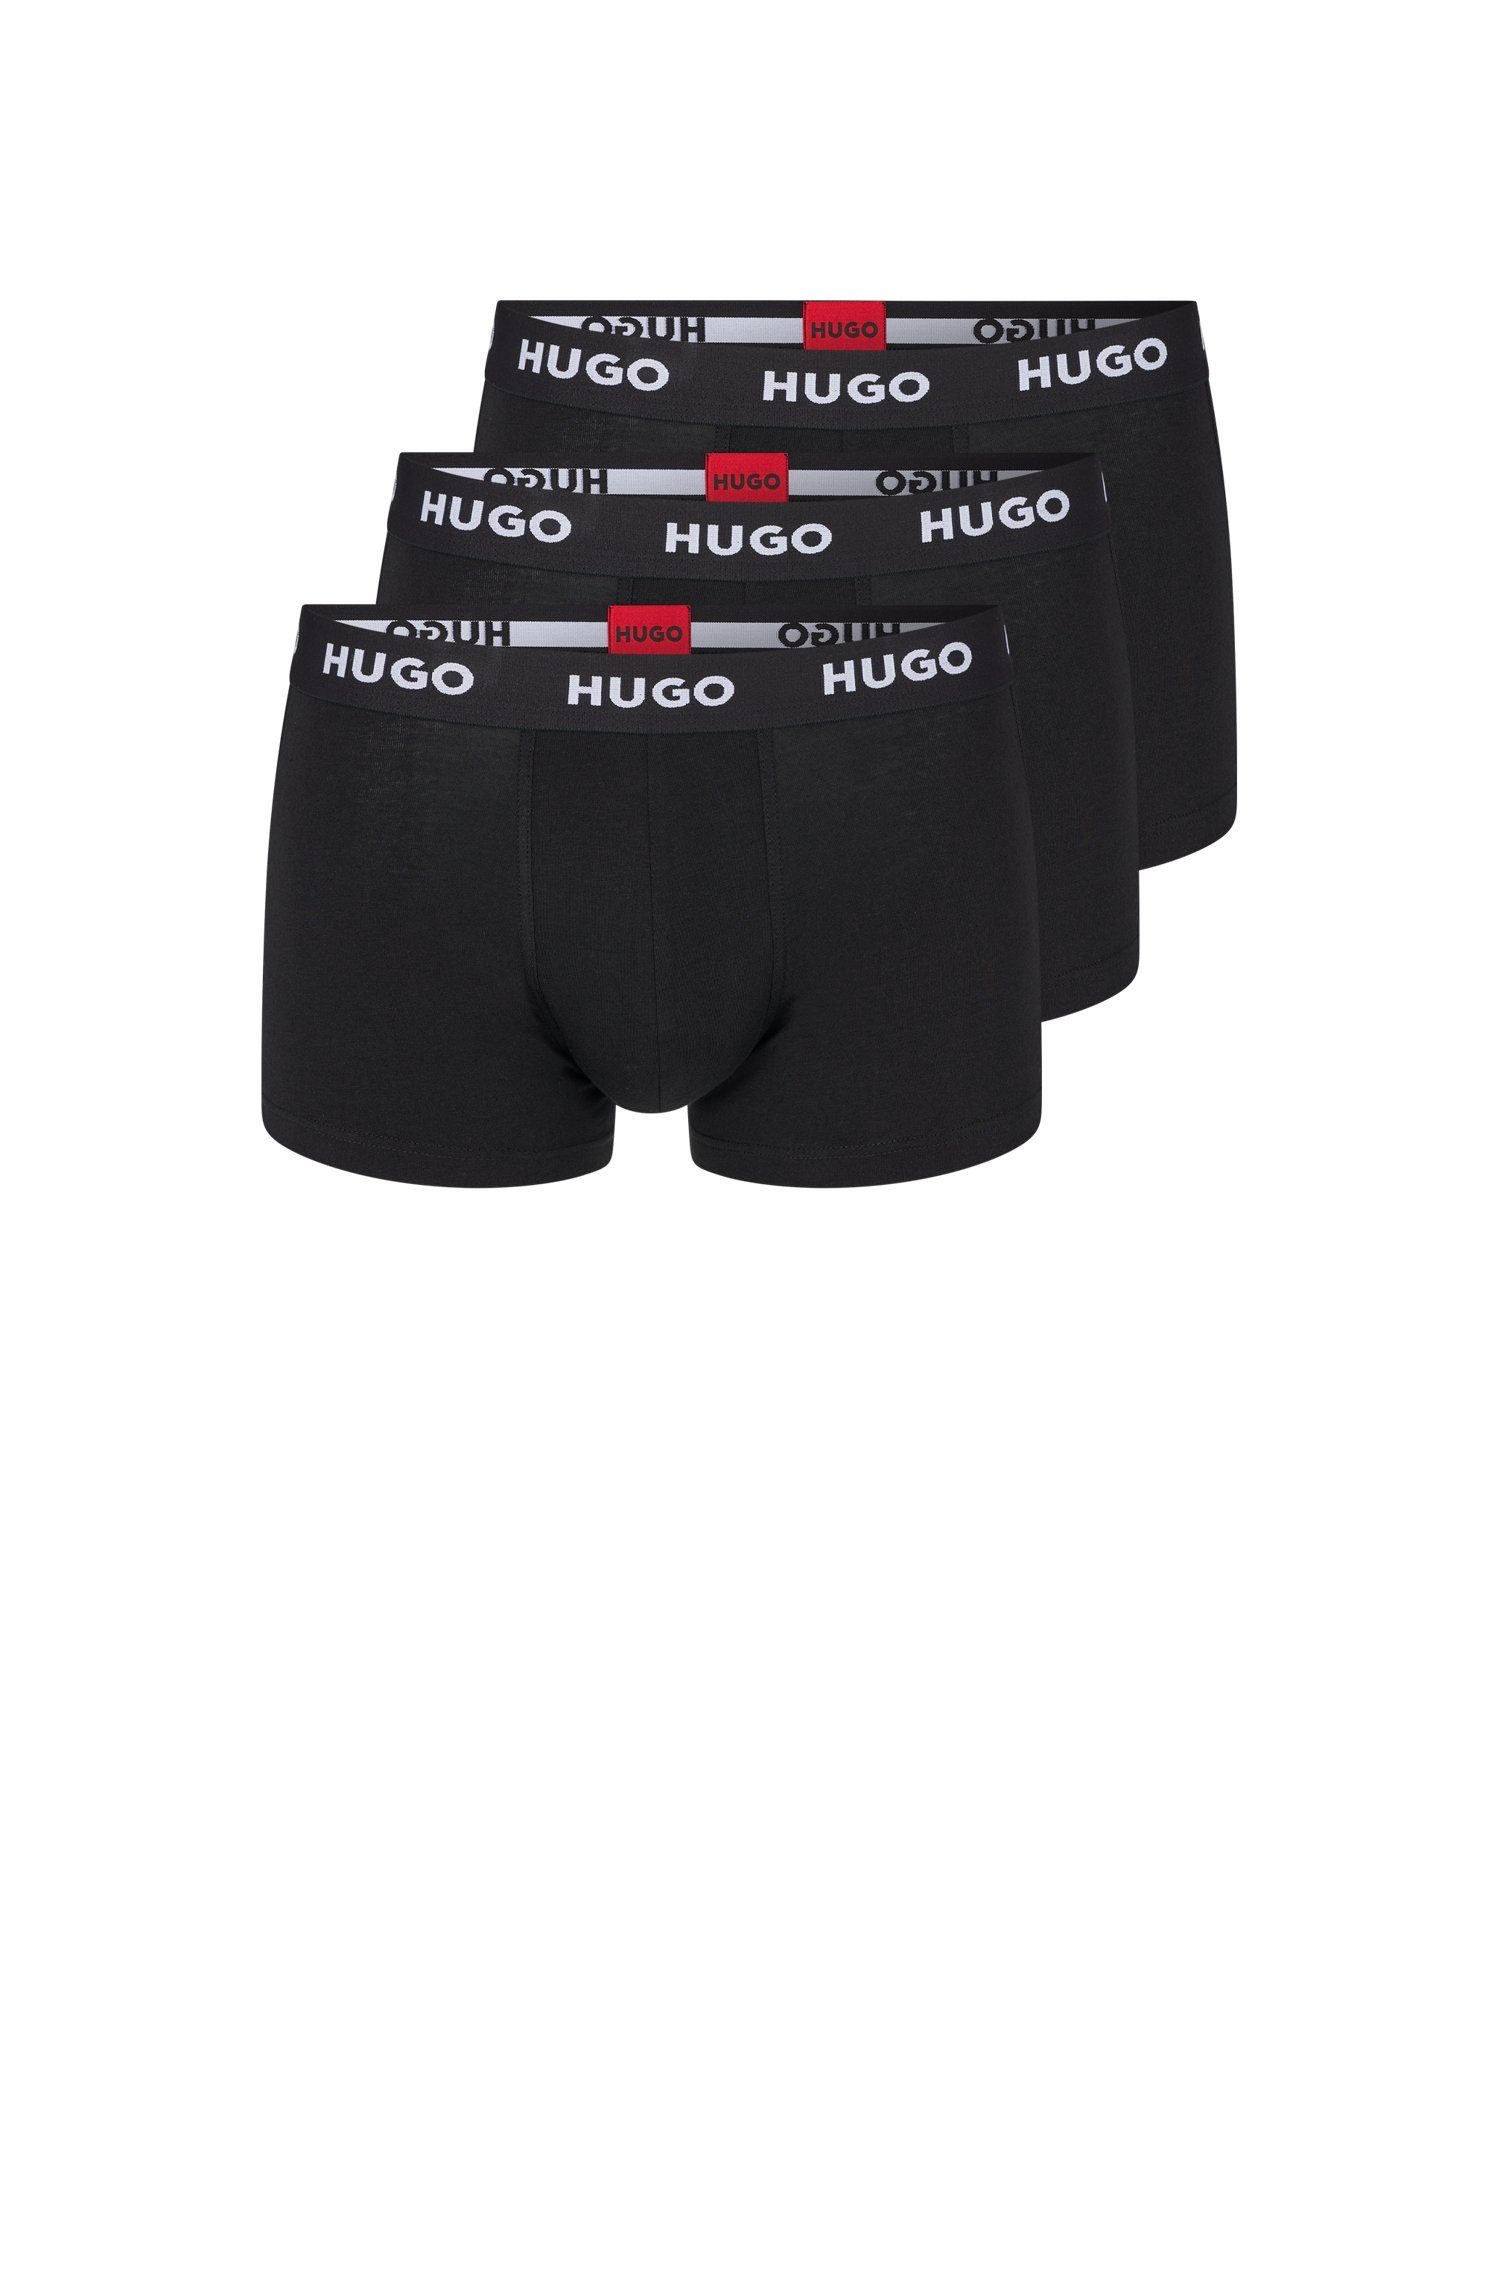 Verkaufskraft HUGO Trunk PACK Pack) TRIPLET black001 (Packung, 3er TRUNK